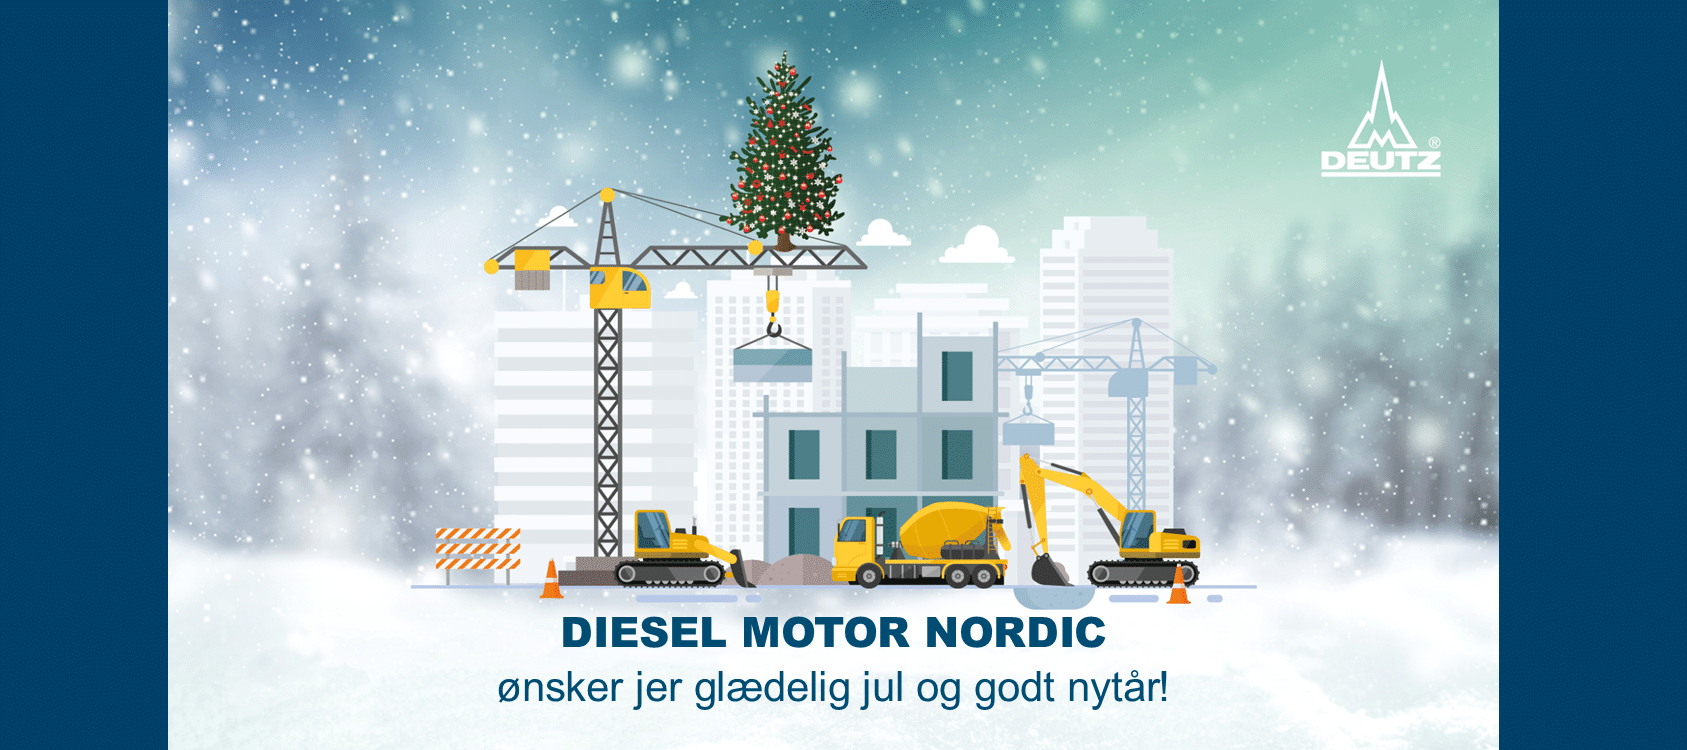 Diesel Motor Nordic ønsker jer glædelig jul og godt nytår!